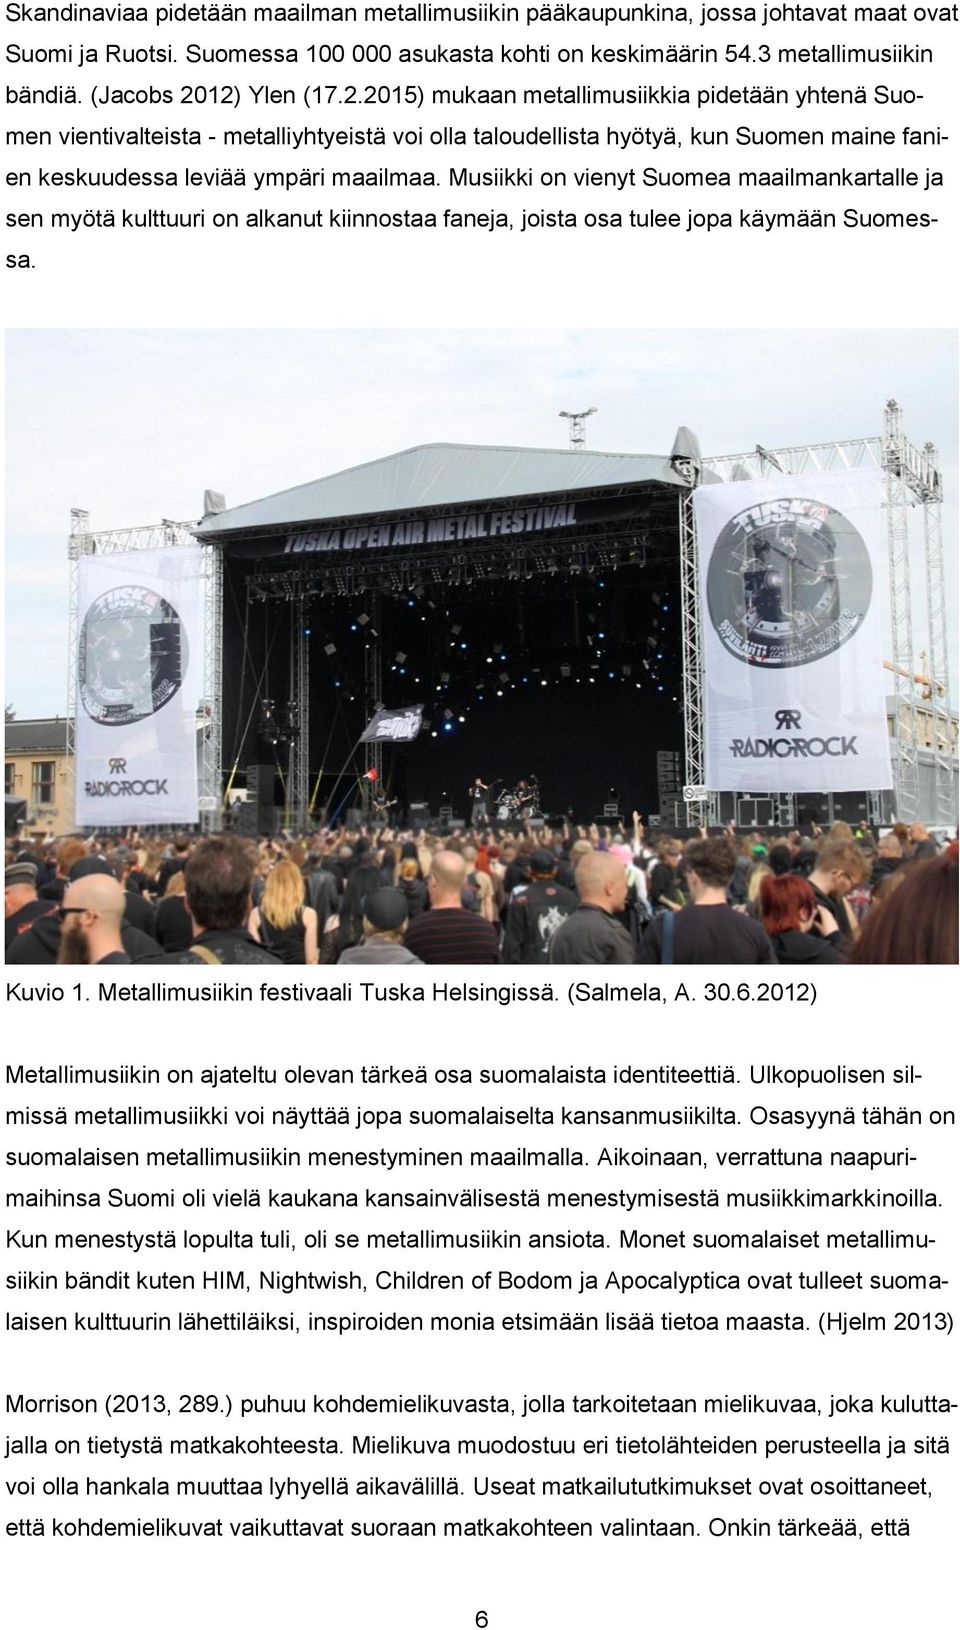 Musiikki on vienyt Suomea maailmankartalle ja sen myötä kulttuuri on alkanut kiinnostaa faneja, joista osa tulee jopa käymään Suomessa. Kuvio 1. Metallimusiikin festivaali Tuska Helsingissä.